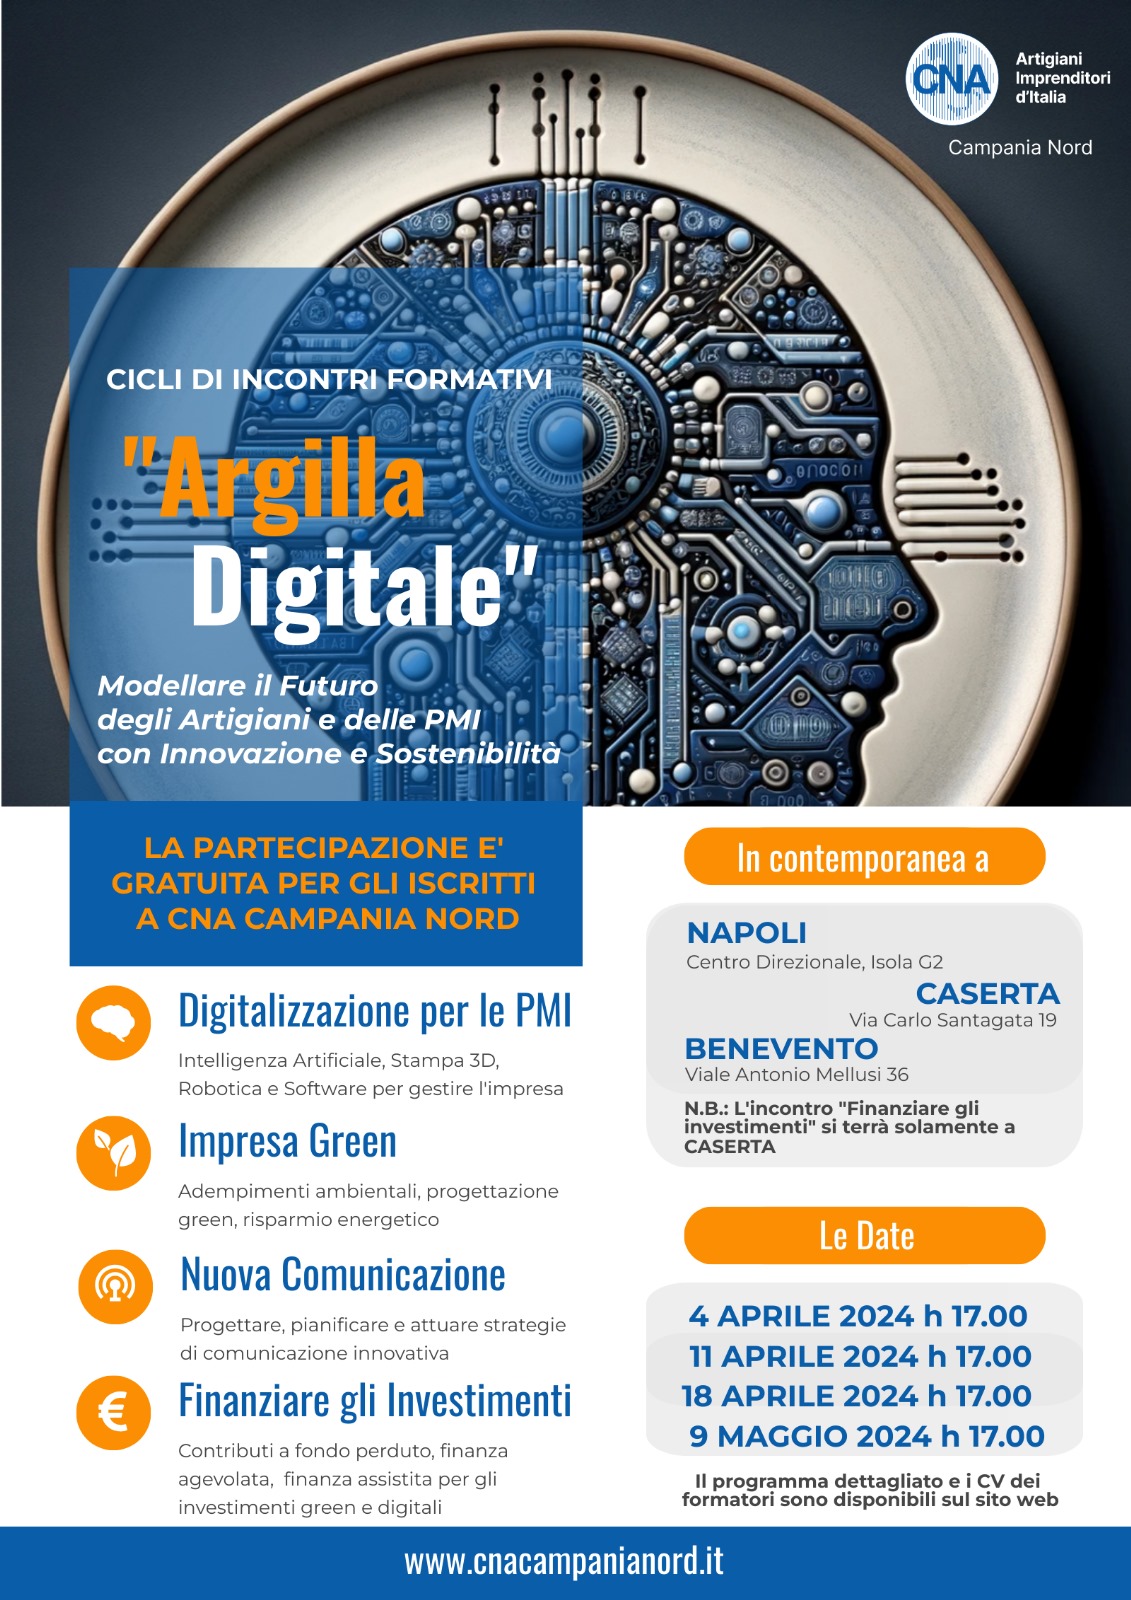 Argilla digitale: CNA Campania Nord promuove ciclo di incontri formativi a Napoli, Caserta e Benevento